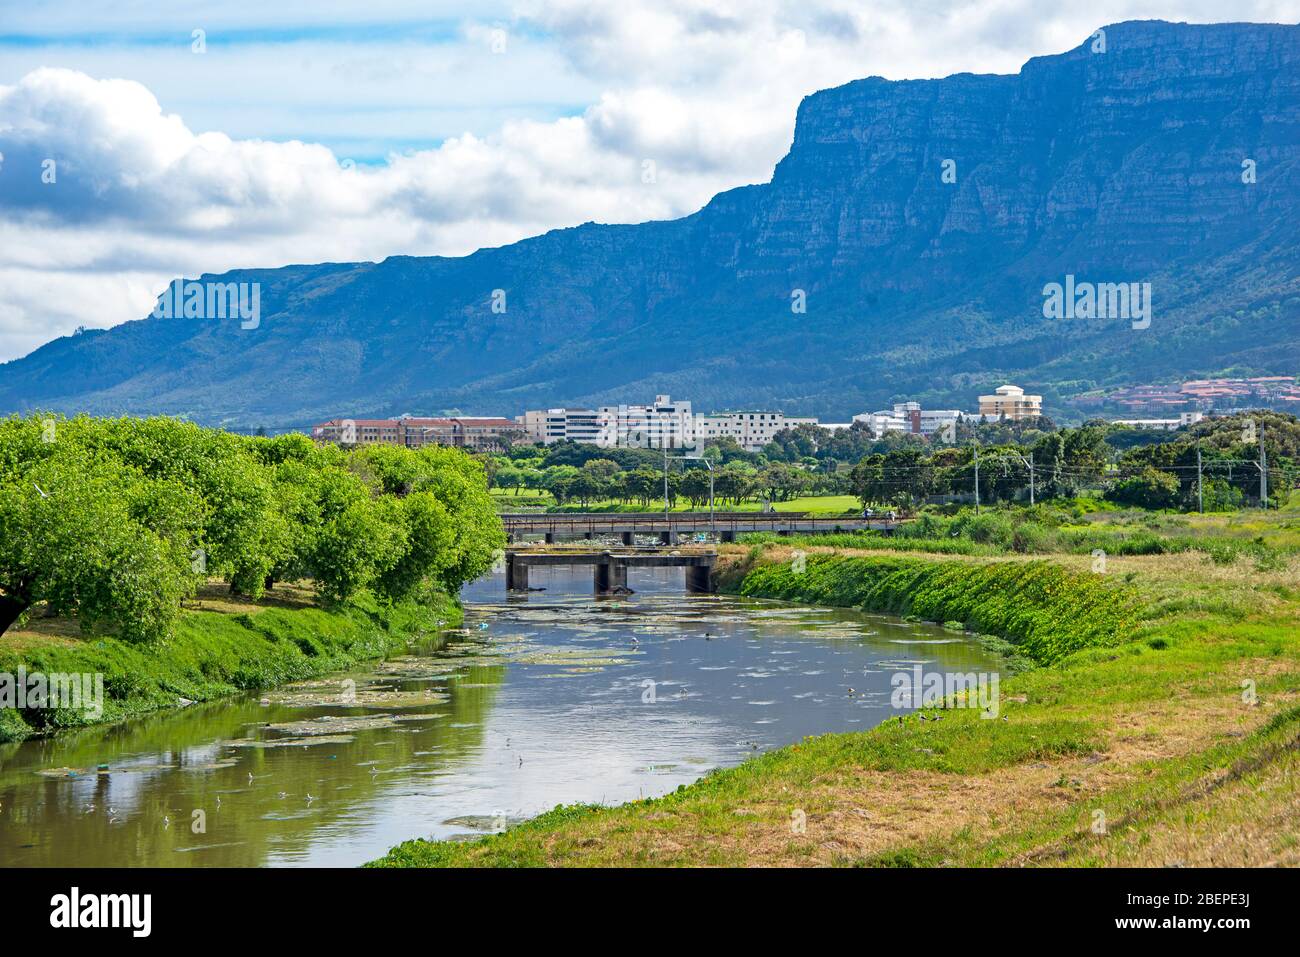 Die üppigen Ufer des Swart River führen hinauf zum Campus der University of Cape Town in Rondebosch. Hinter der Universität steht die Tafelberge. Im Fluss kann man viele Watvögel sehen, aber auch eine Menge Plastikverschmutzung. Stockfoto